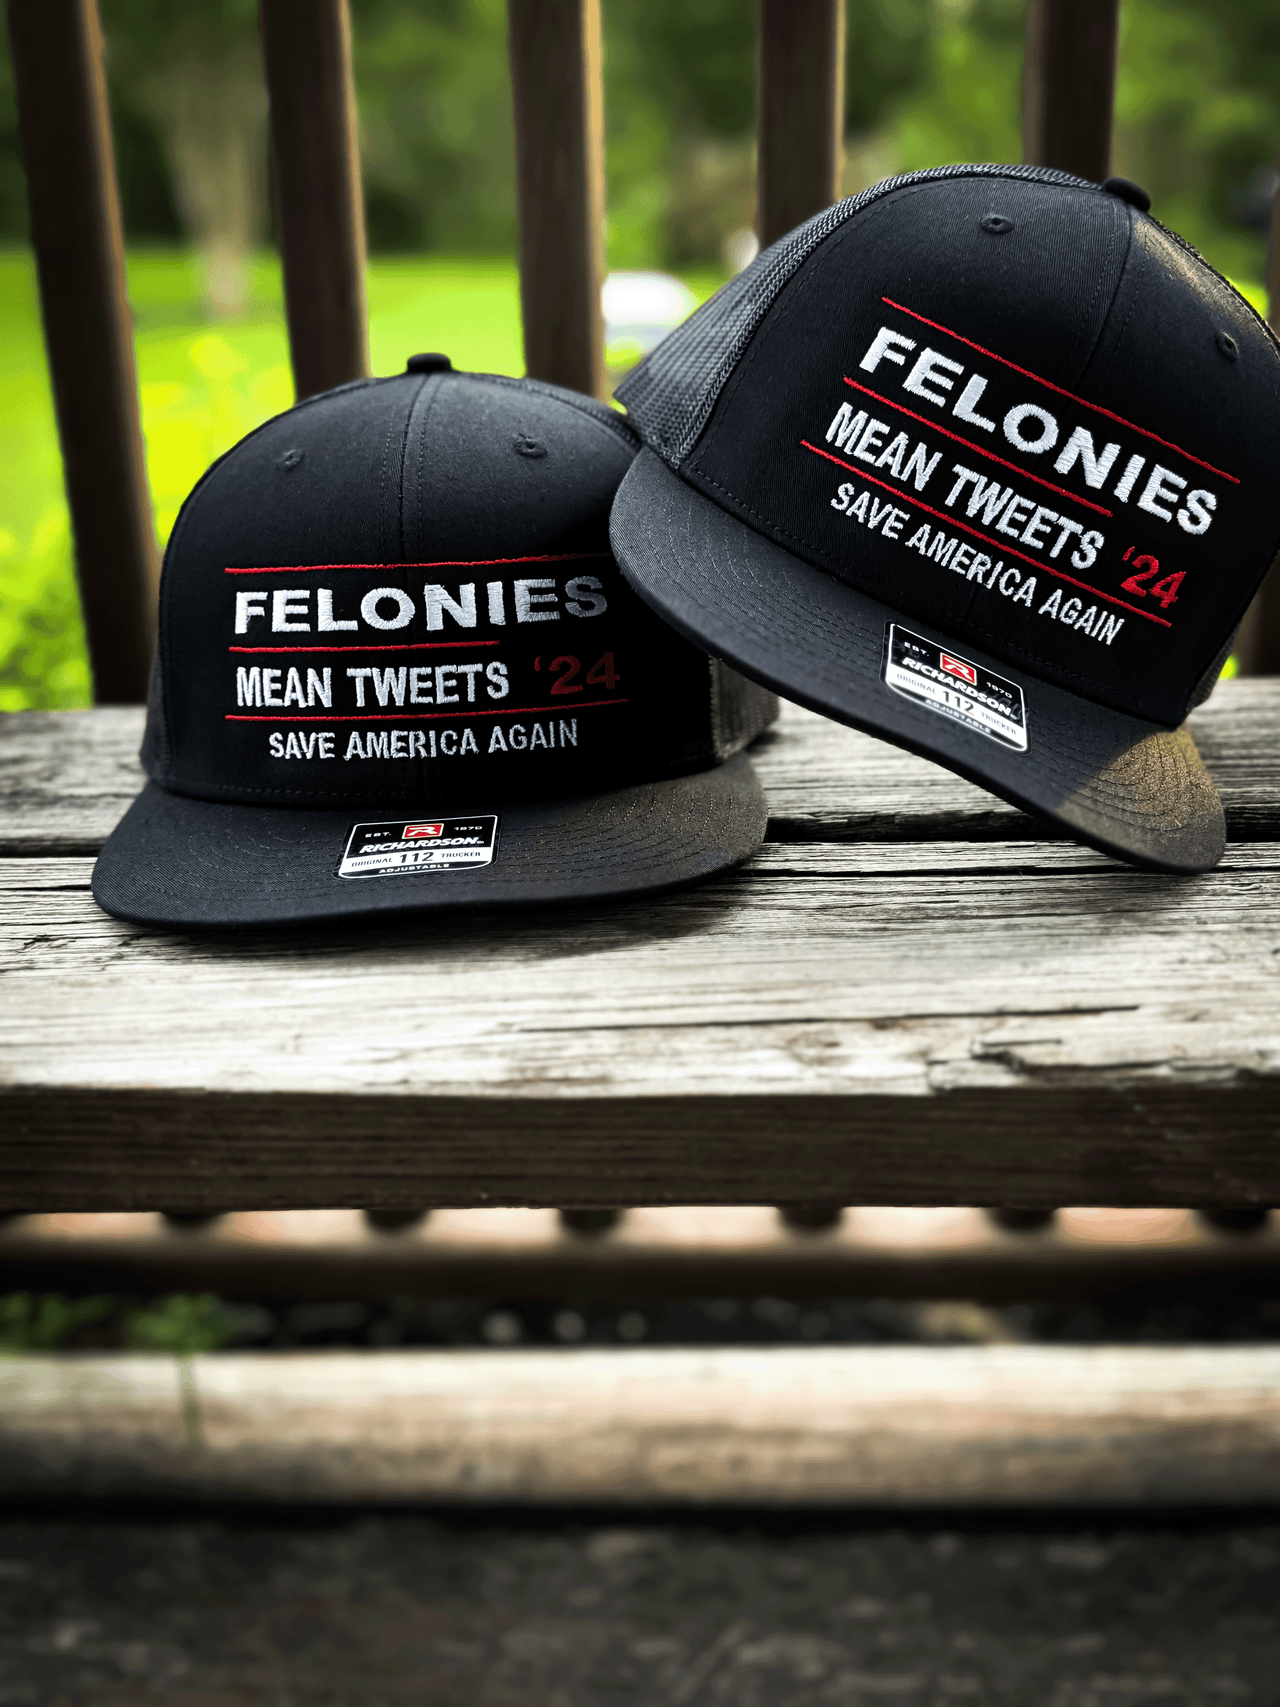 The "Felonies" Hat